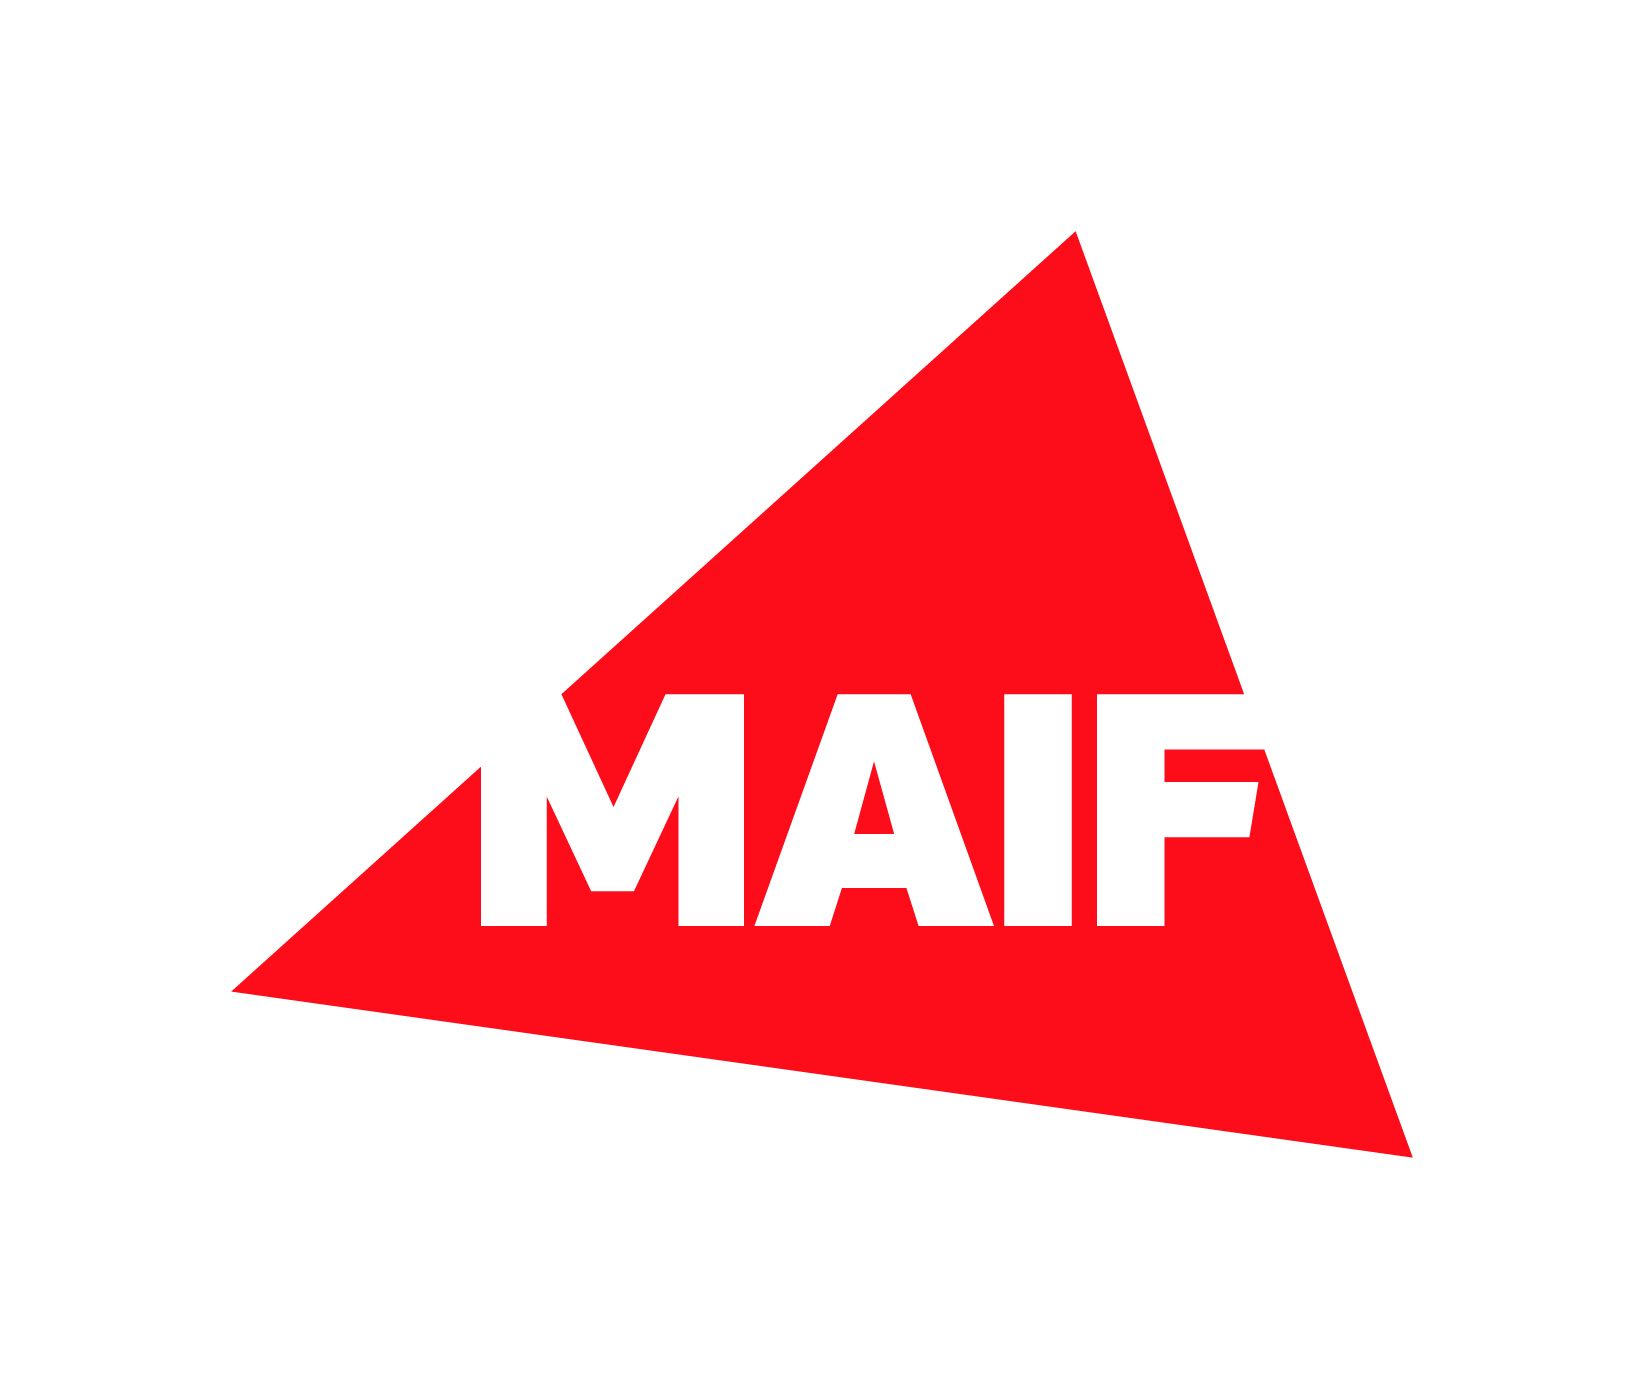 Logo MAIF